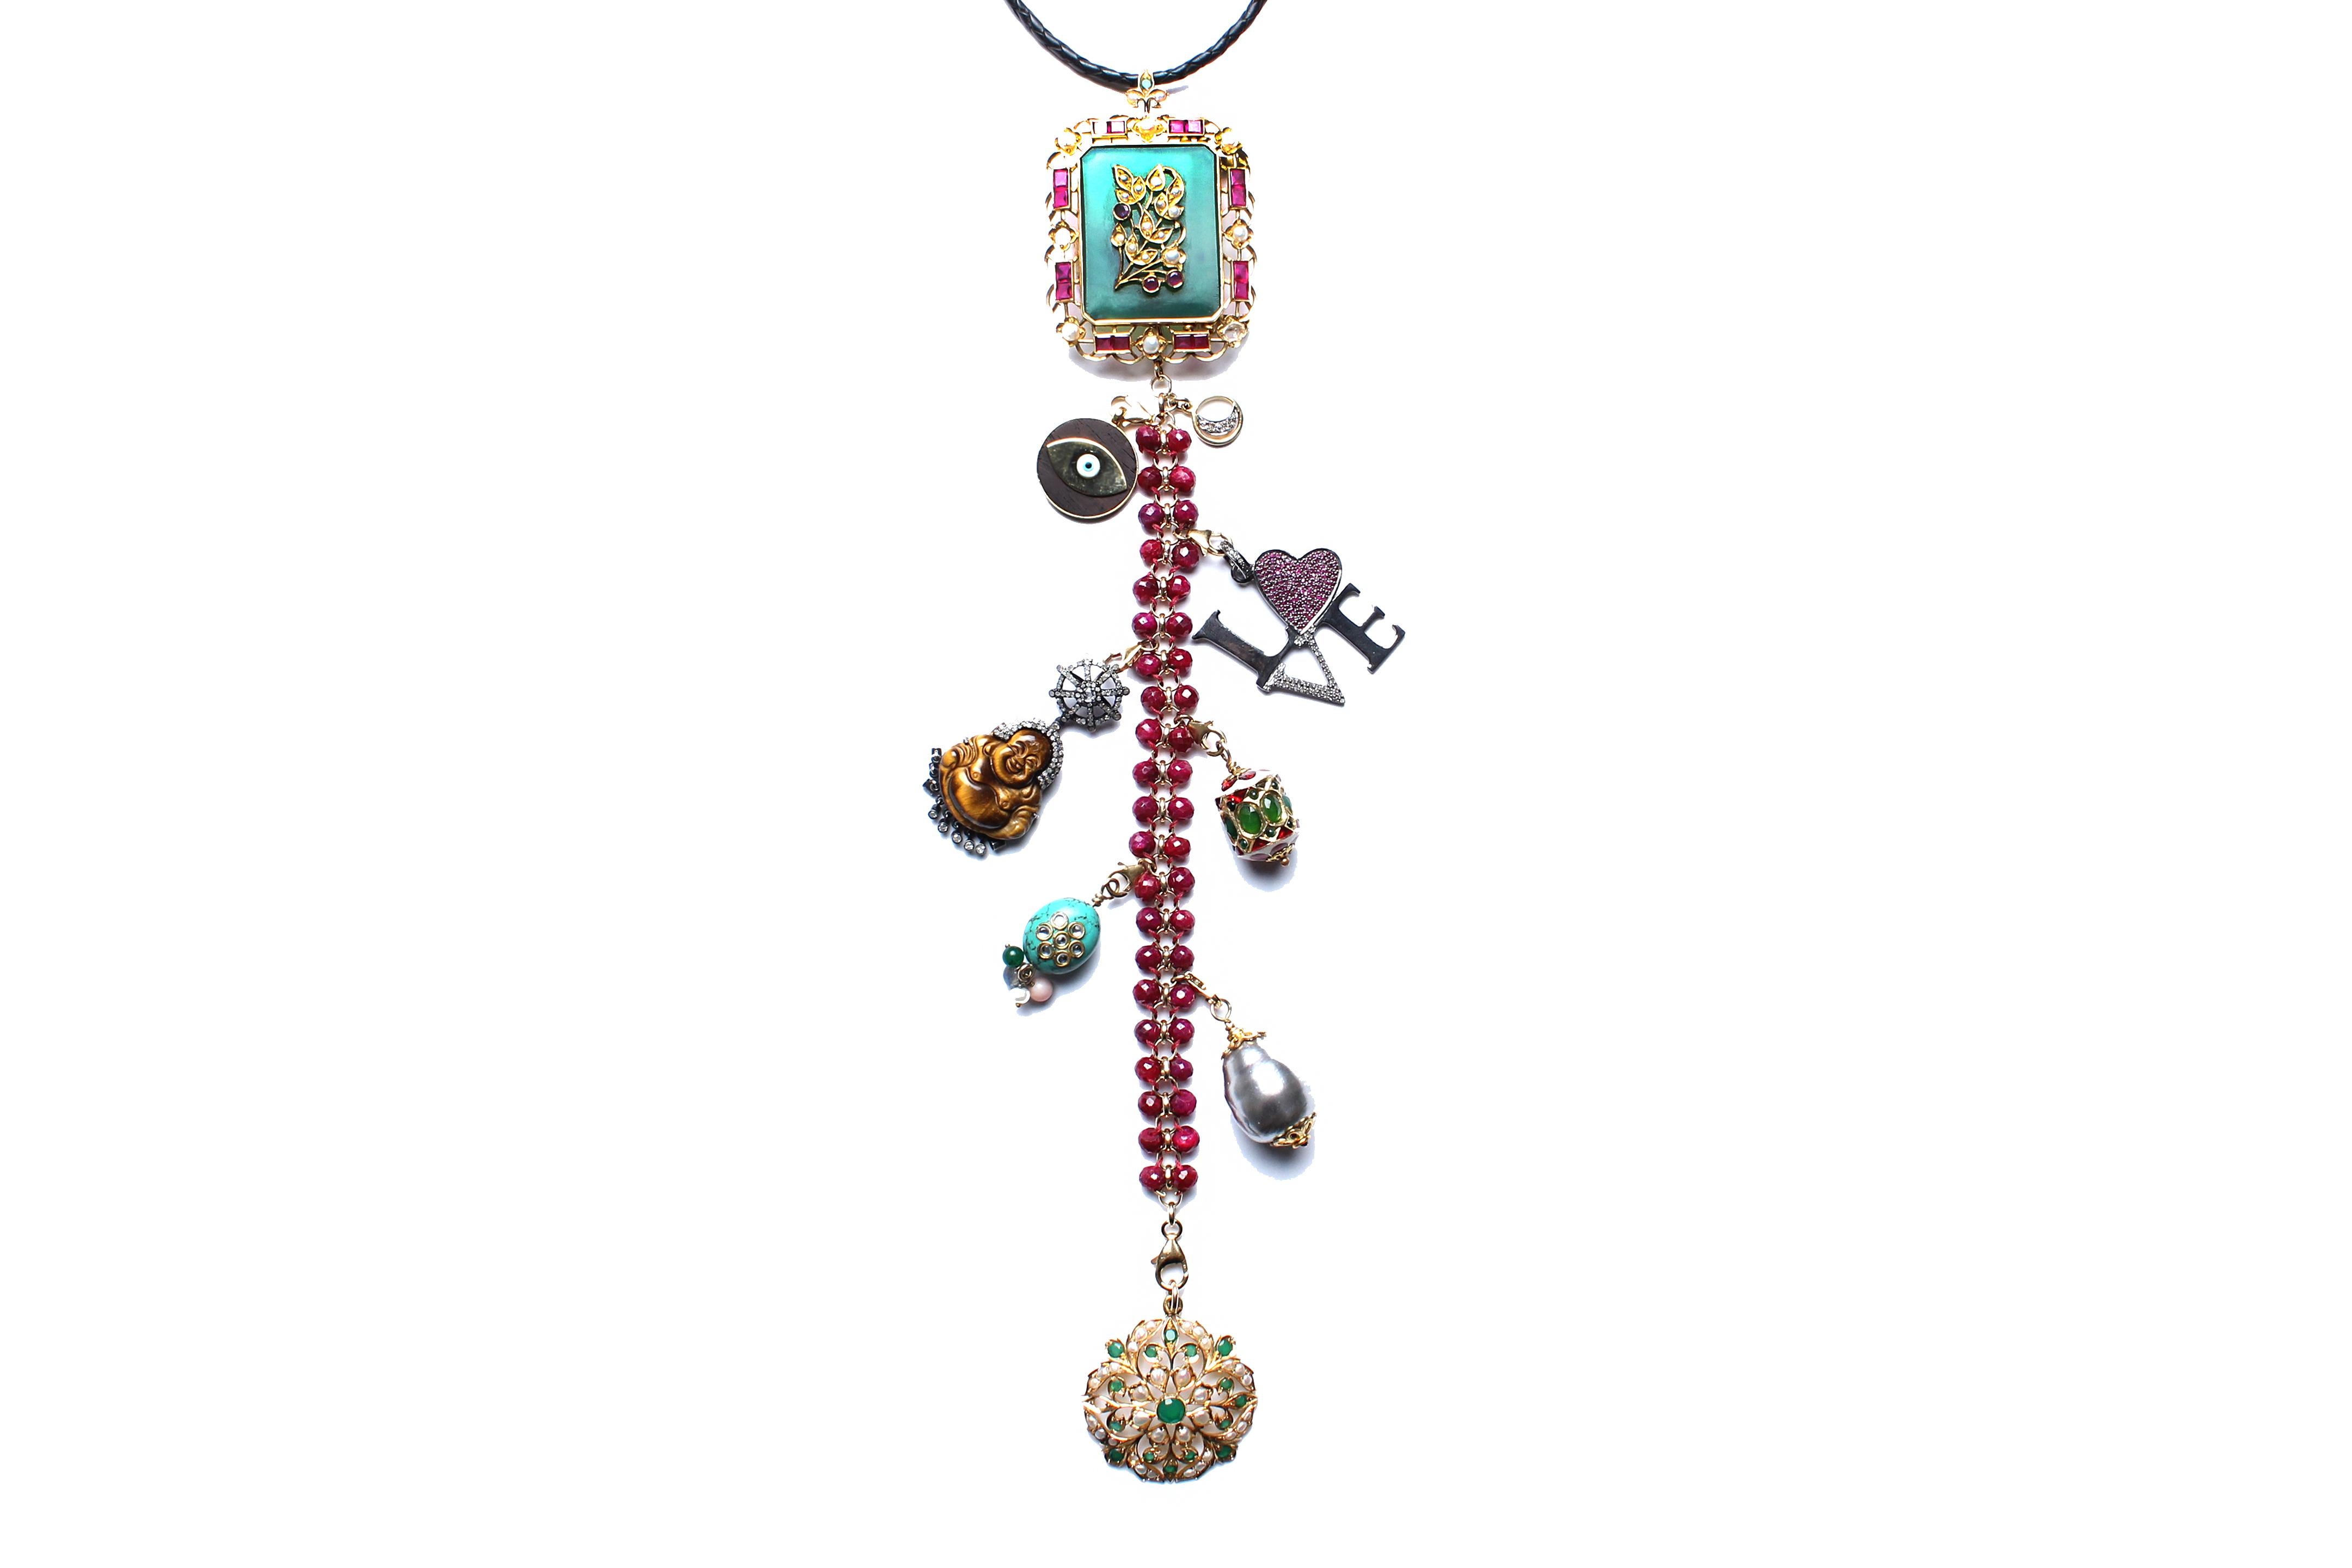 Contemporary Clarissa Bronfman 'Queen Shiva II' Symbol Tree Necklace